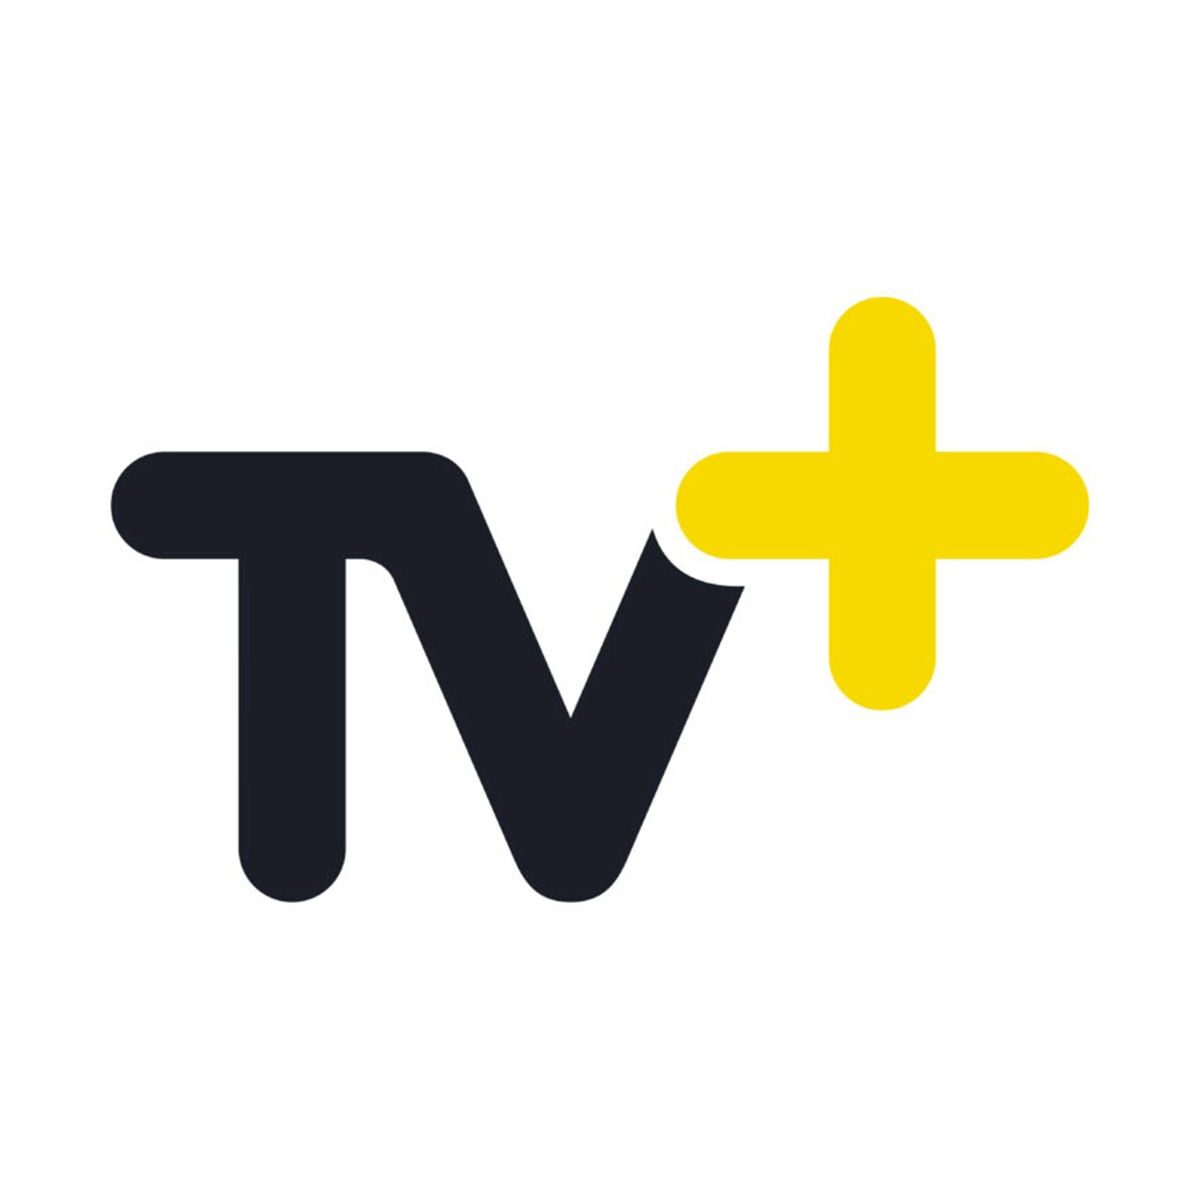 Dl tv. TV Plus. Ka TV Plus. Vinci Family. 18 TV+&.